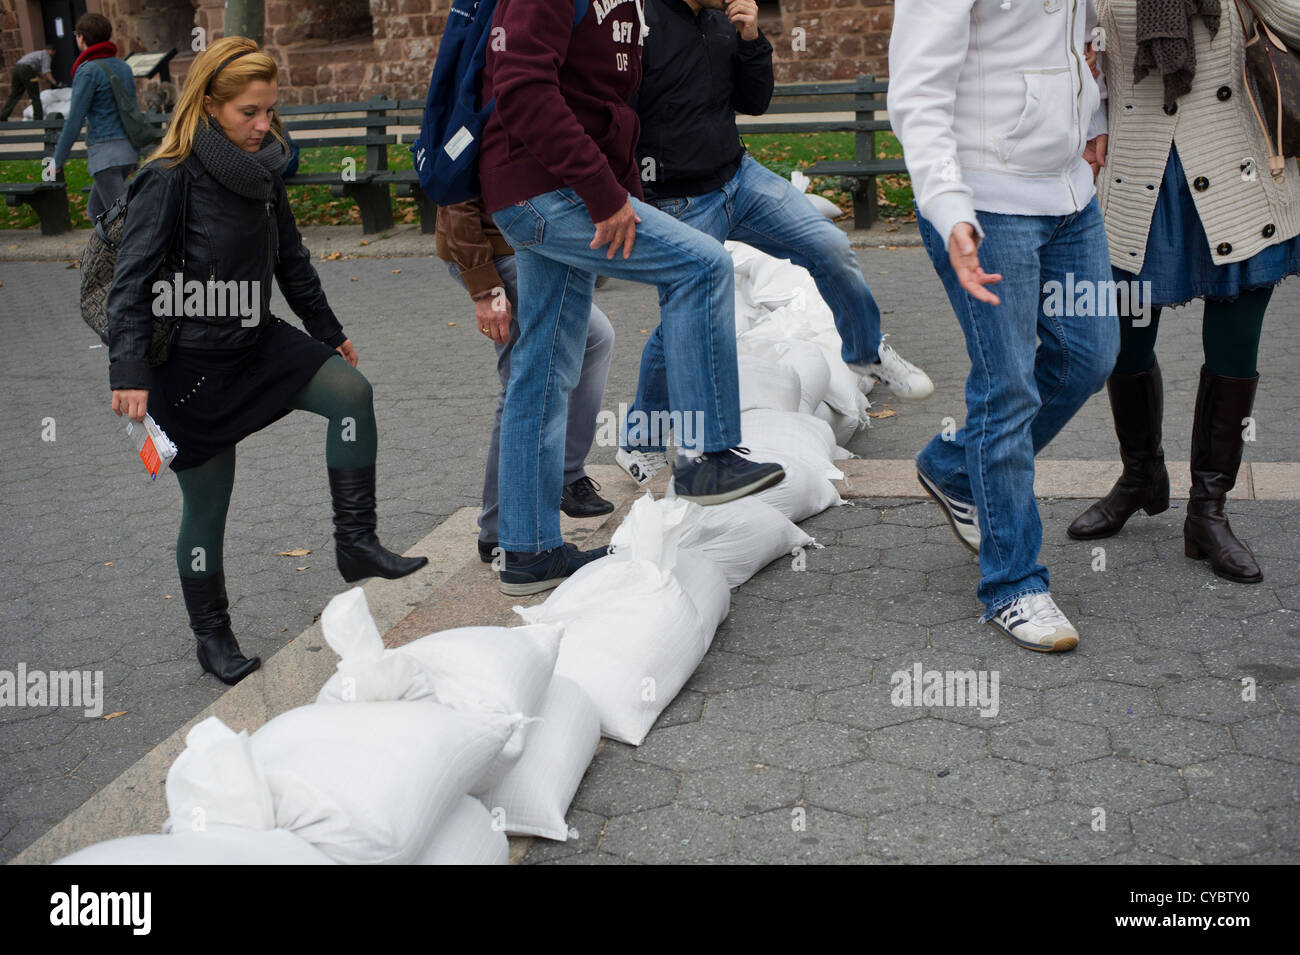 Fase di turisti su sacchi di sabbia al Liberty Island ferry in Battery Park nella zona a zona di evacuazione Foto Stock